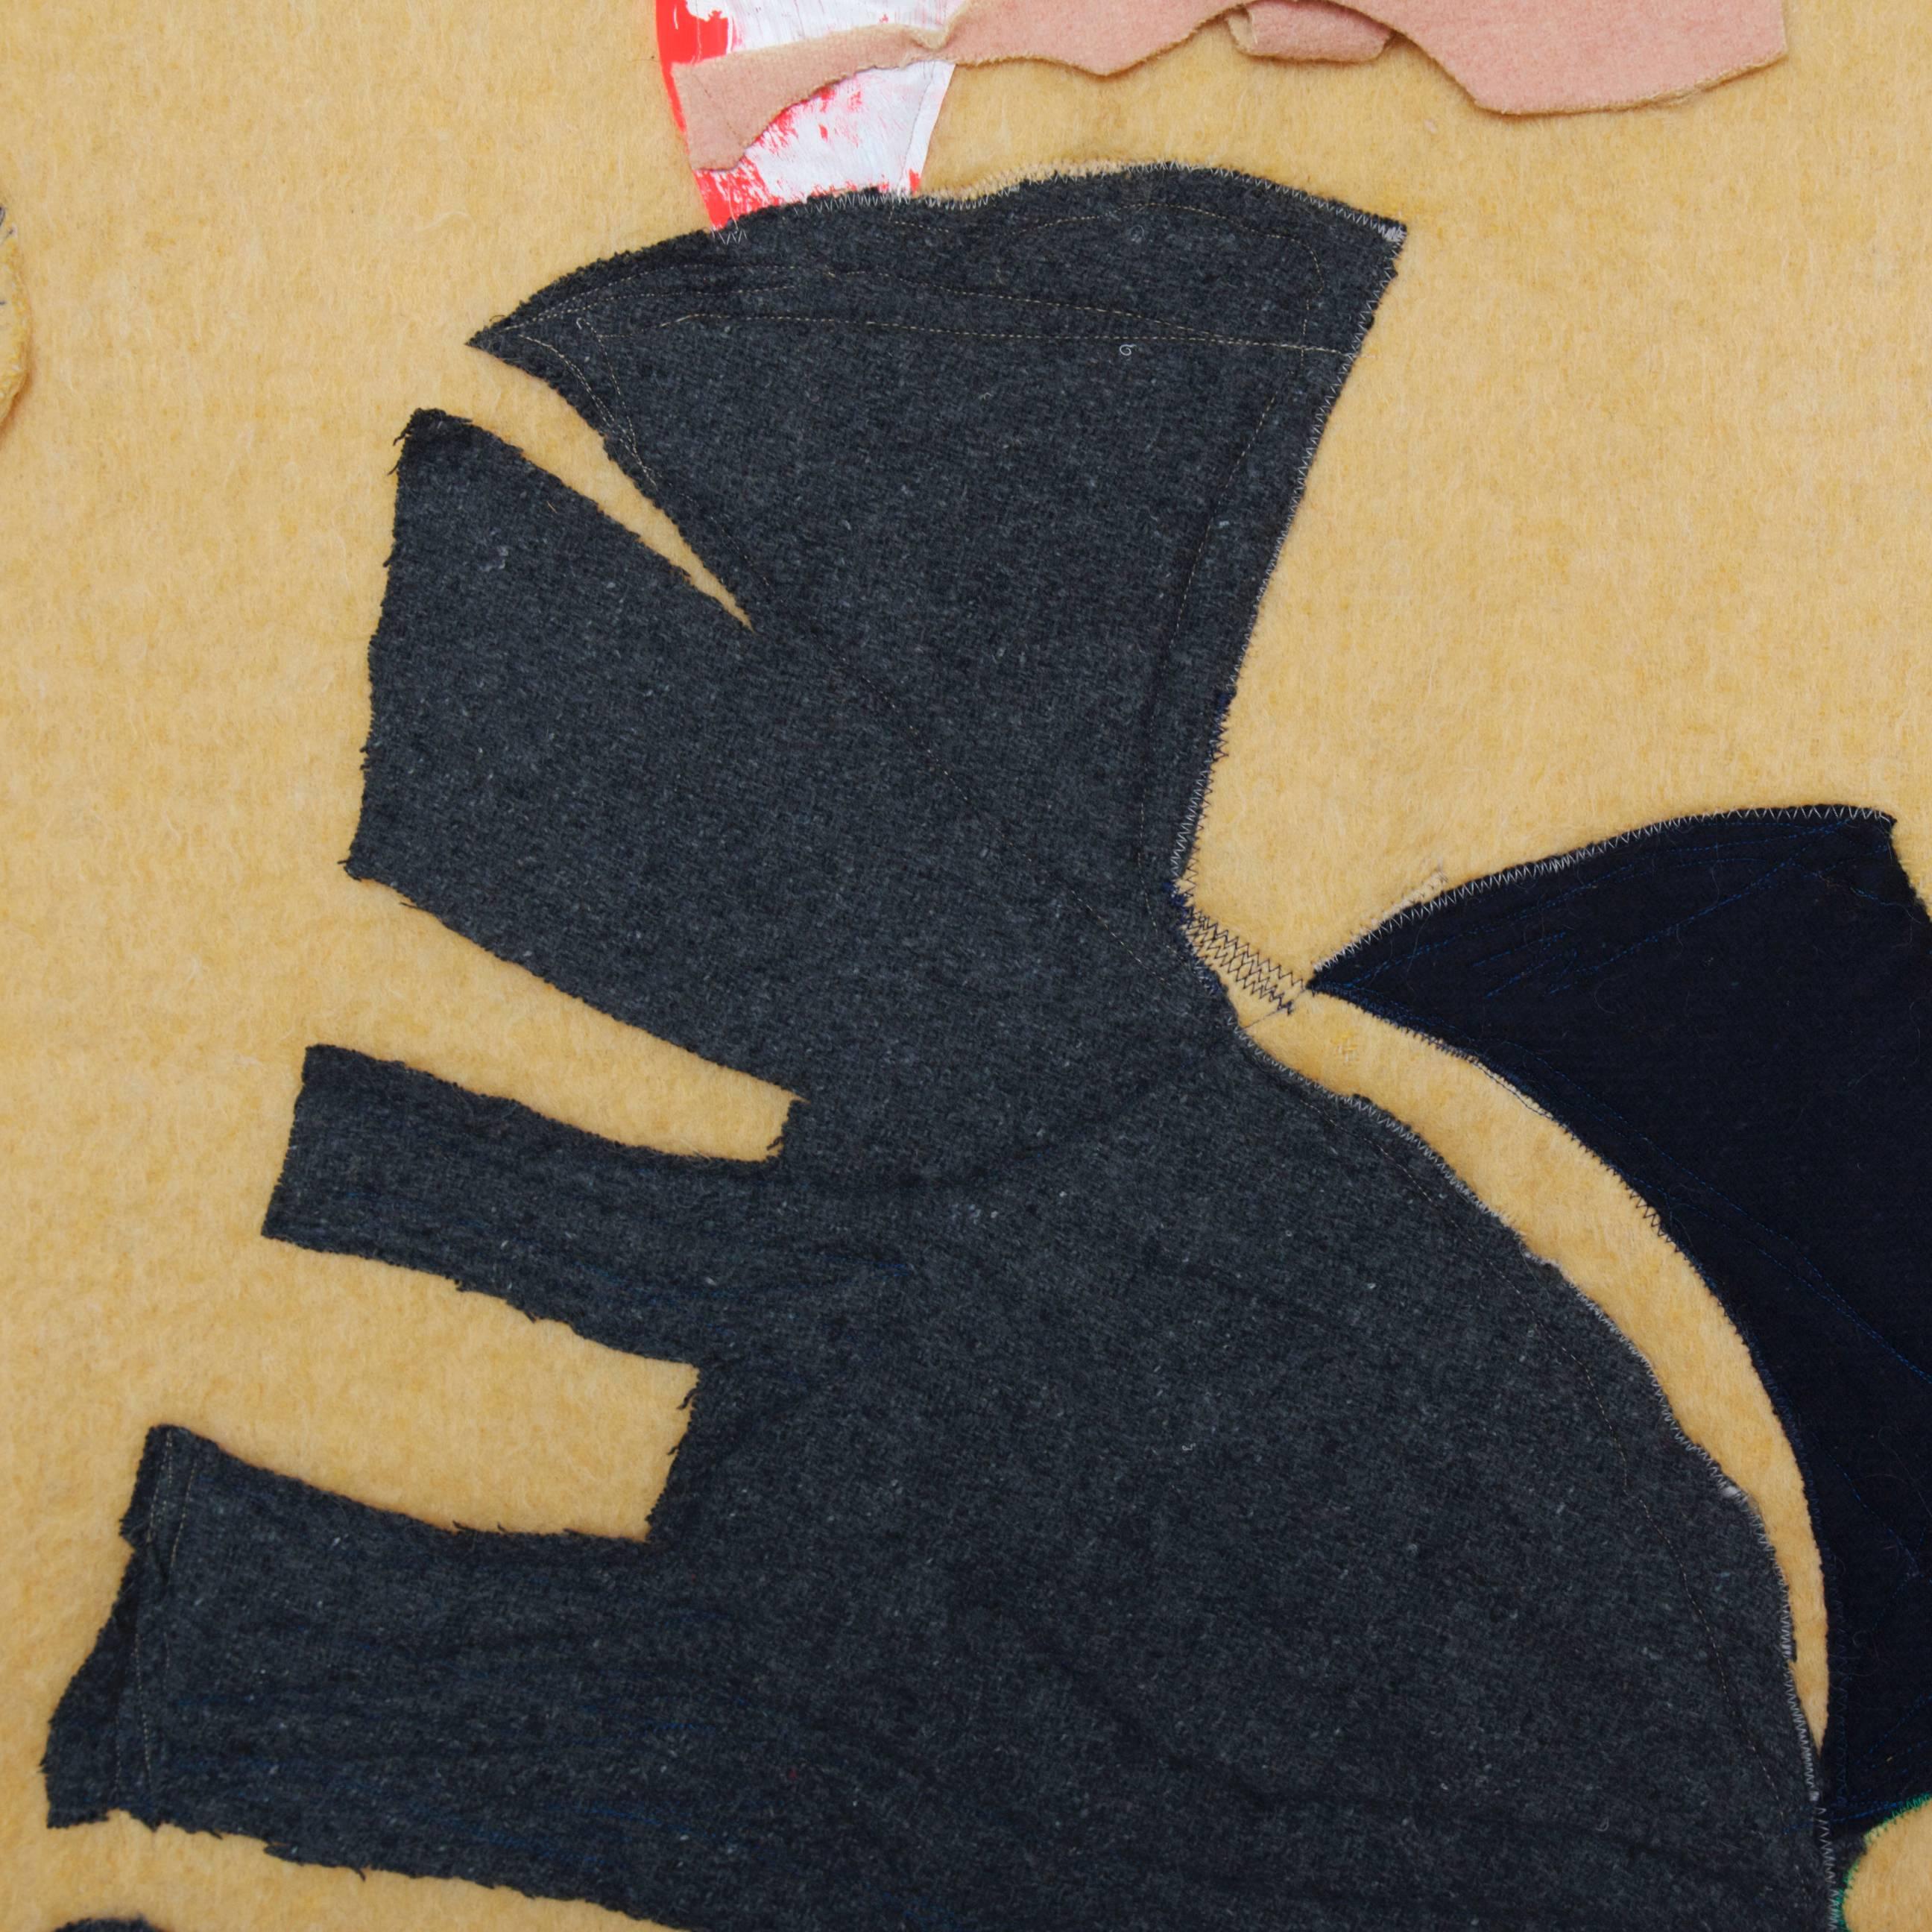 Hergestellt im Jahr 2009 von Naomi Clark

Wolldecke mit Bemalung und Applizierung

Naomi Clarks Quiltbilder werden aus alten Campingdecken hergestellt, die sie bei Ebay, auf Flohmärkten und bei Garagenverkäufen erworben hat. Sie gestaltet die alten